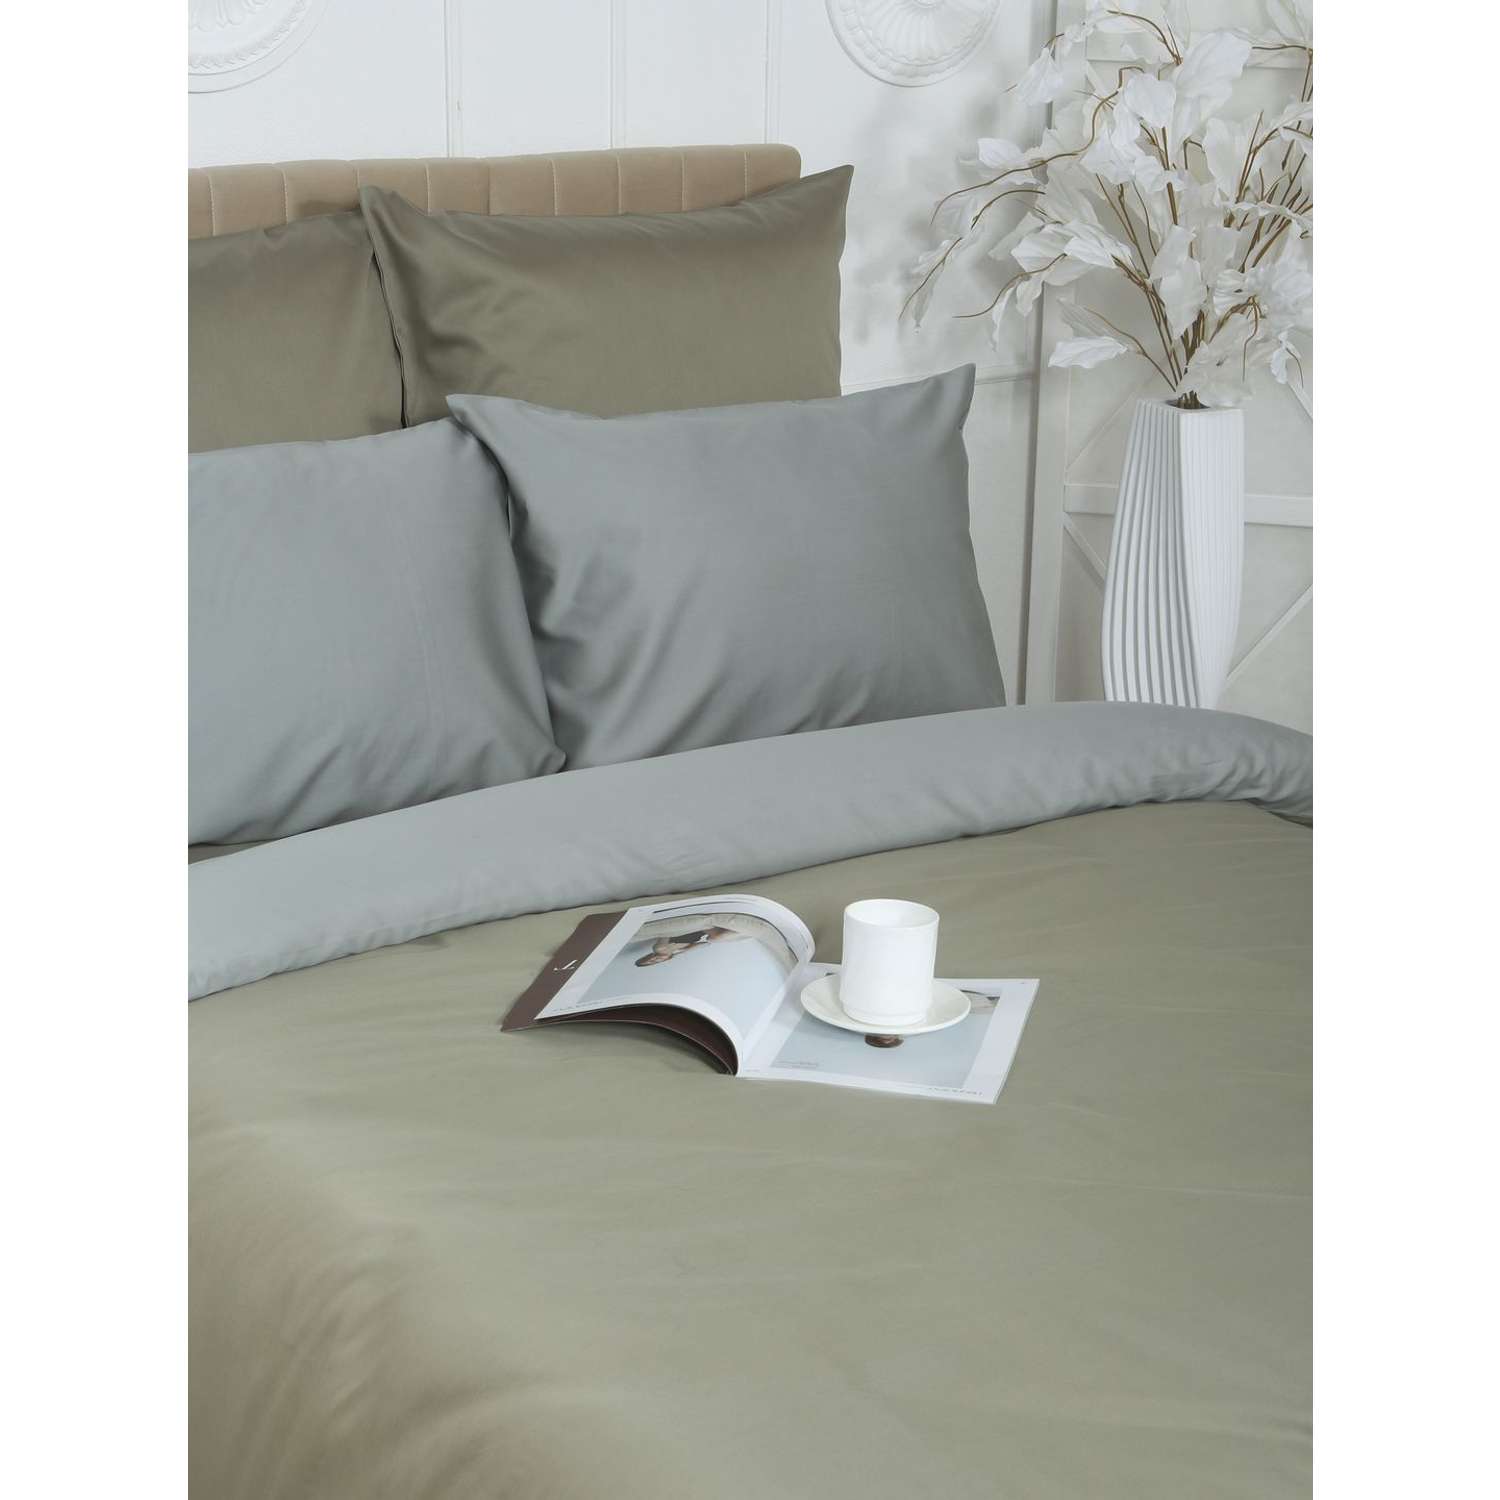 Комплект постельного белья Mona Liza 2 спальный ML Luxury sage тенсель лиоцелл шалфей/камень - фото 4